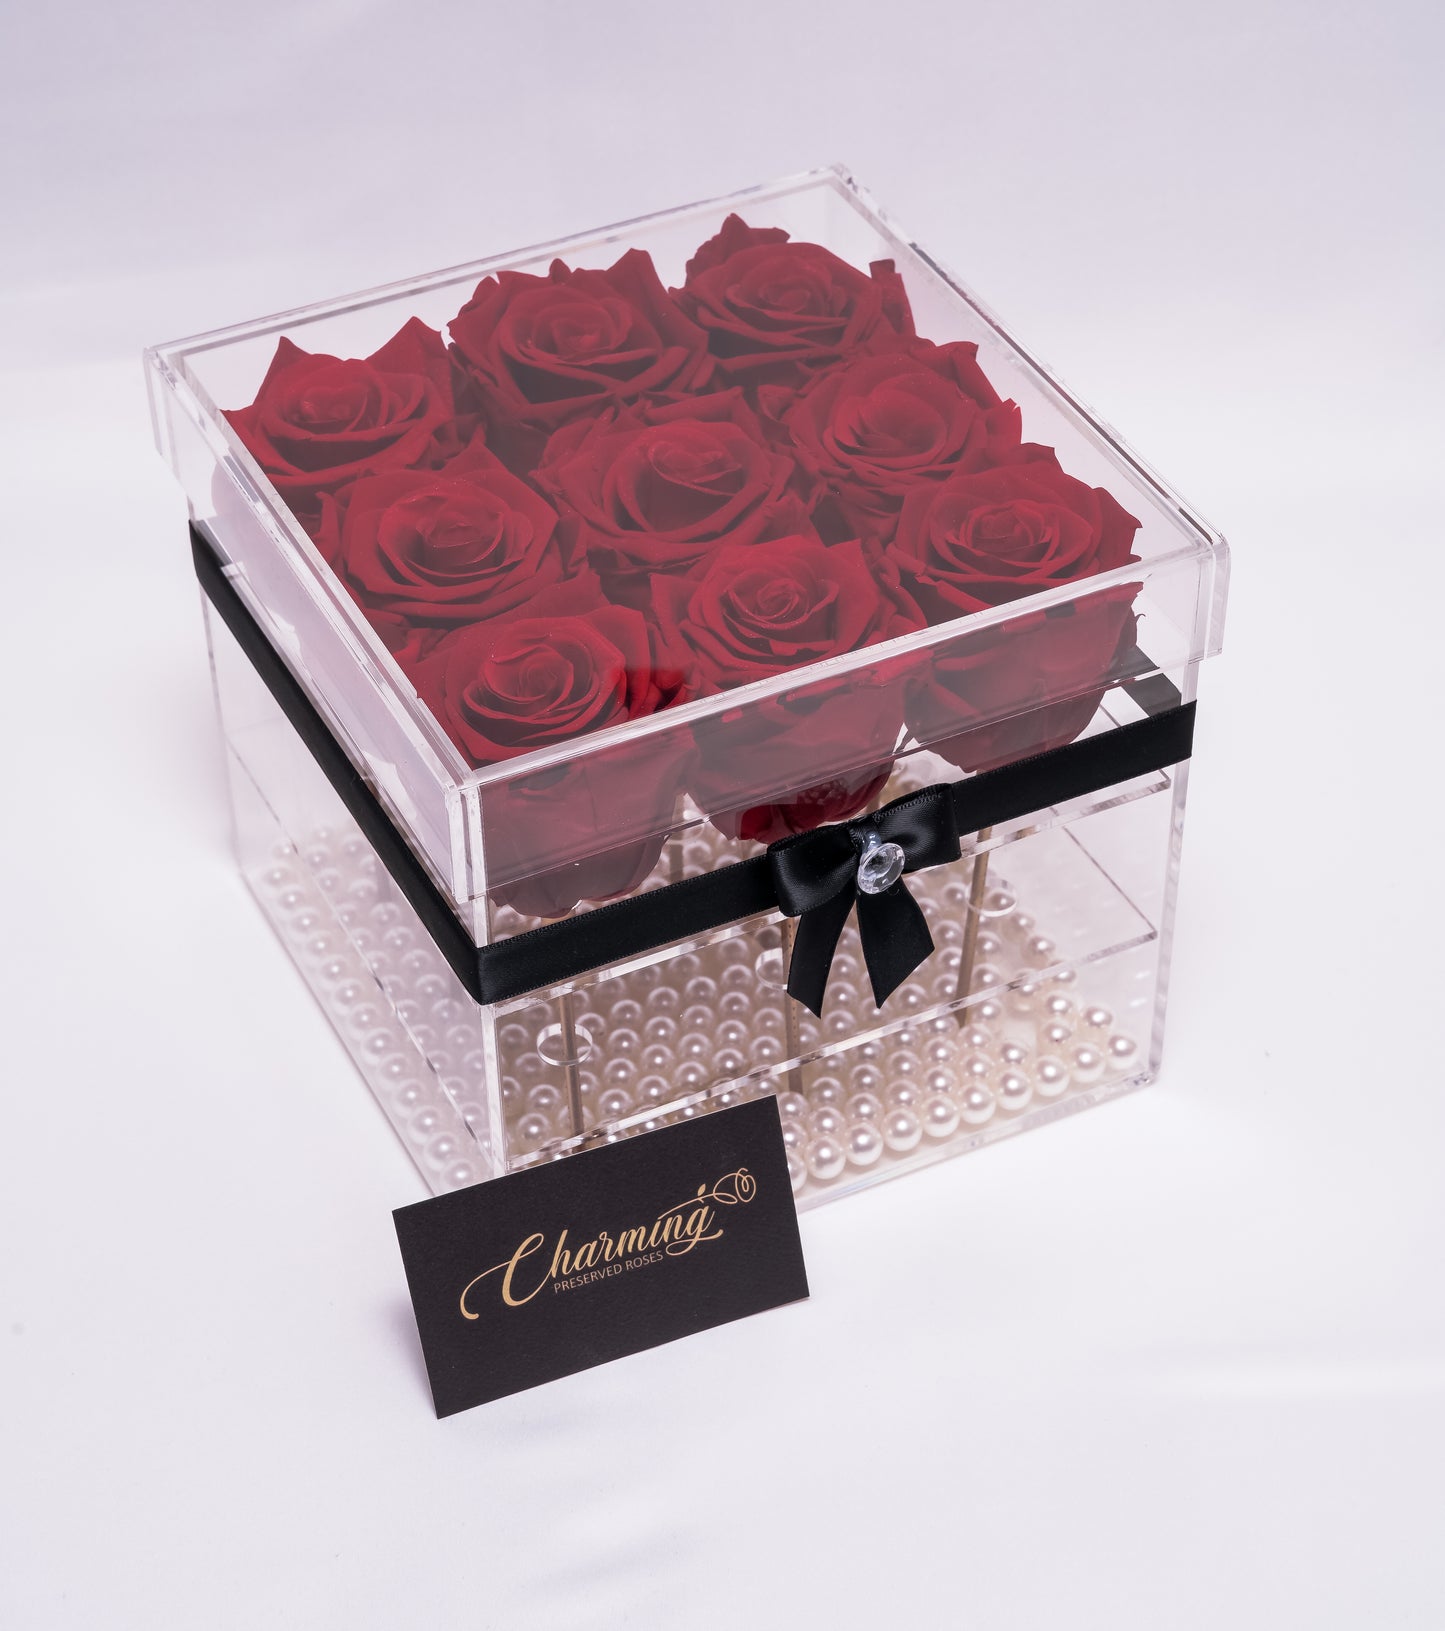 9 Rose Premium box with Stem